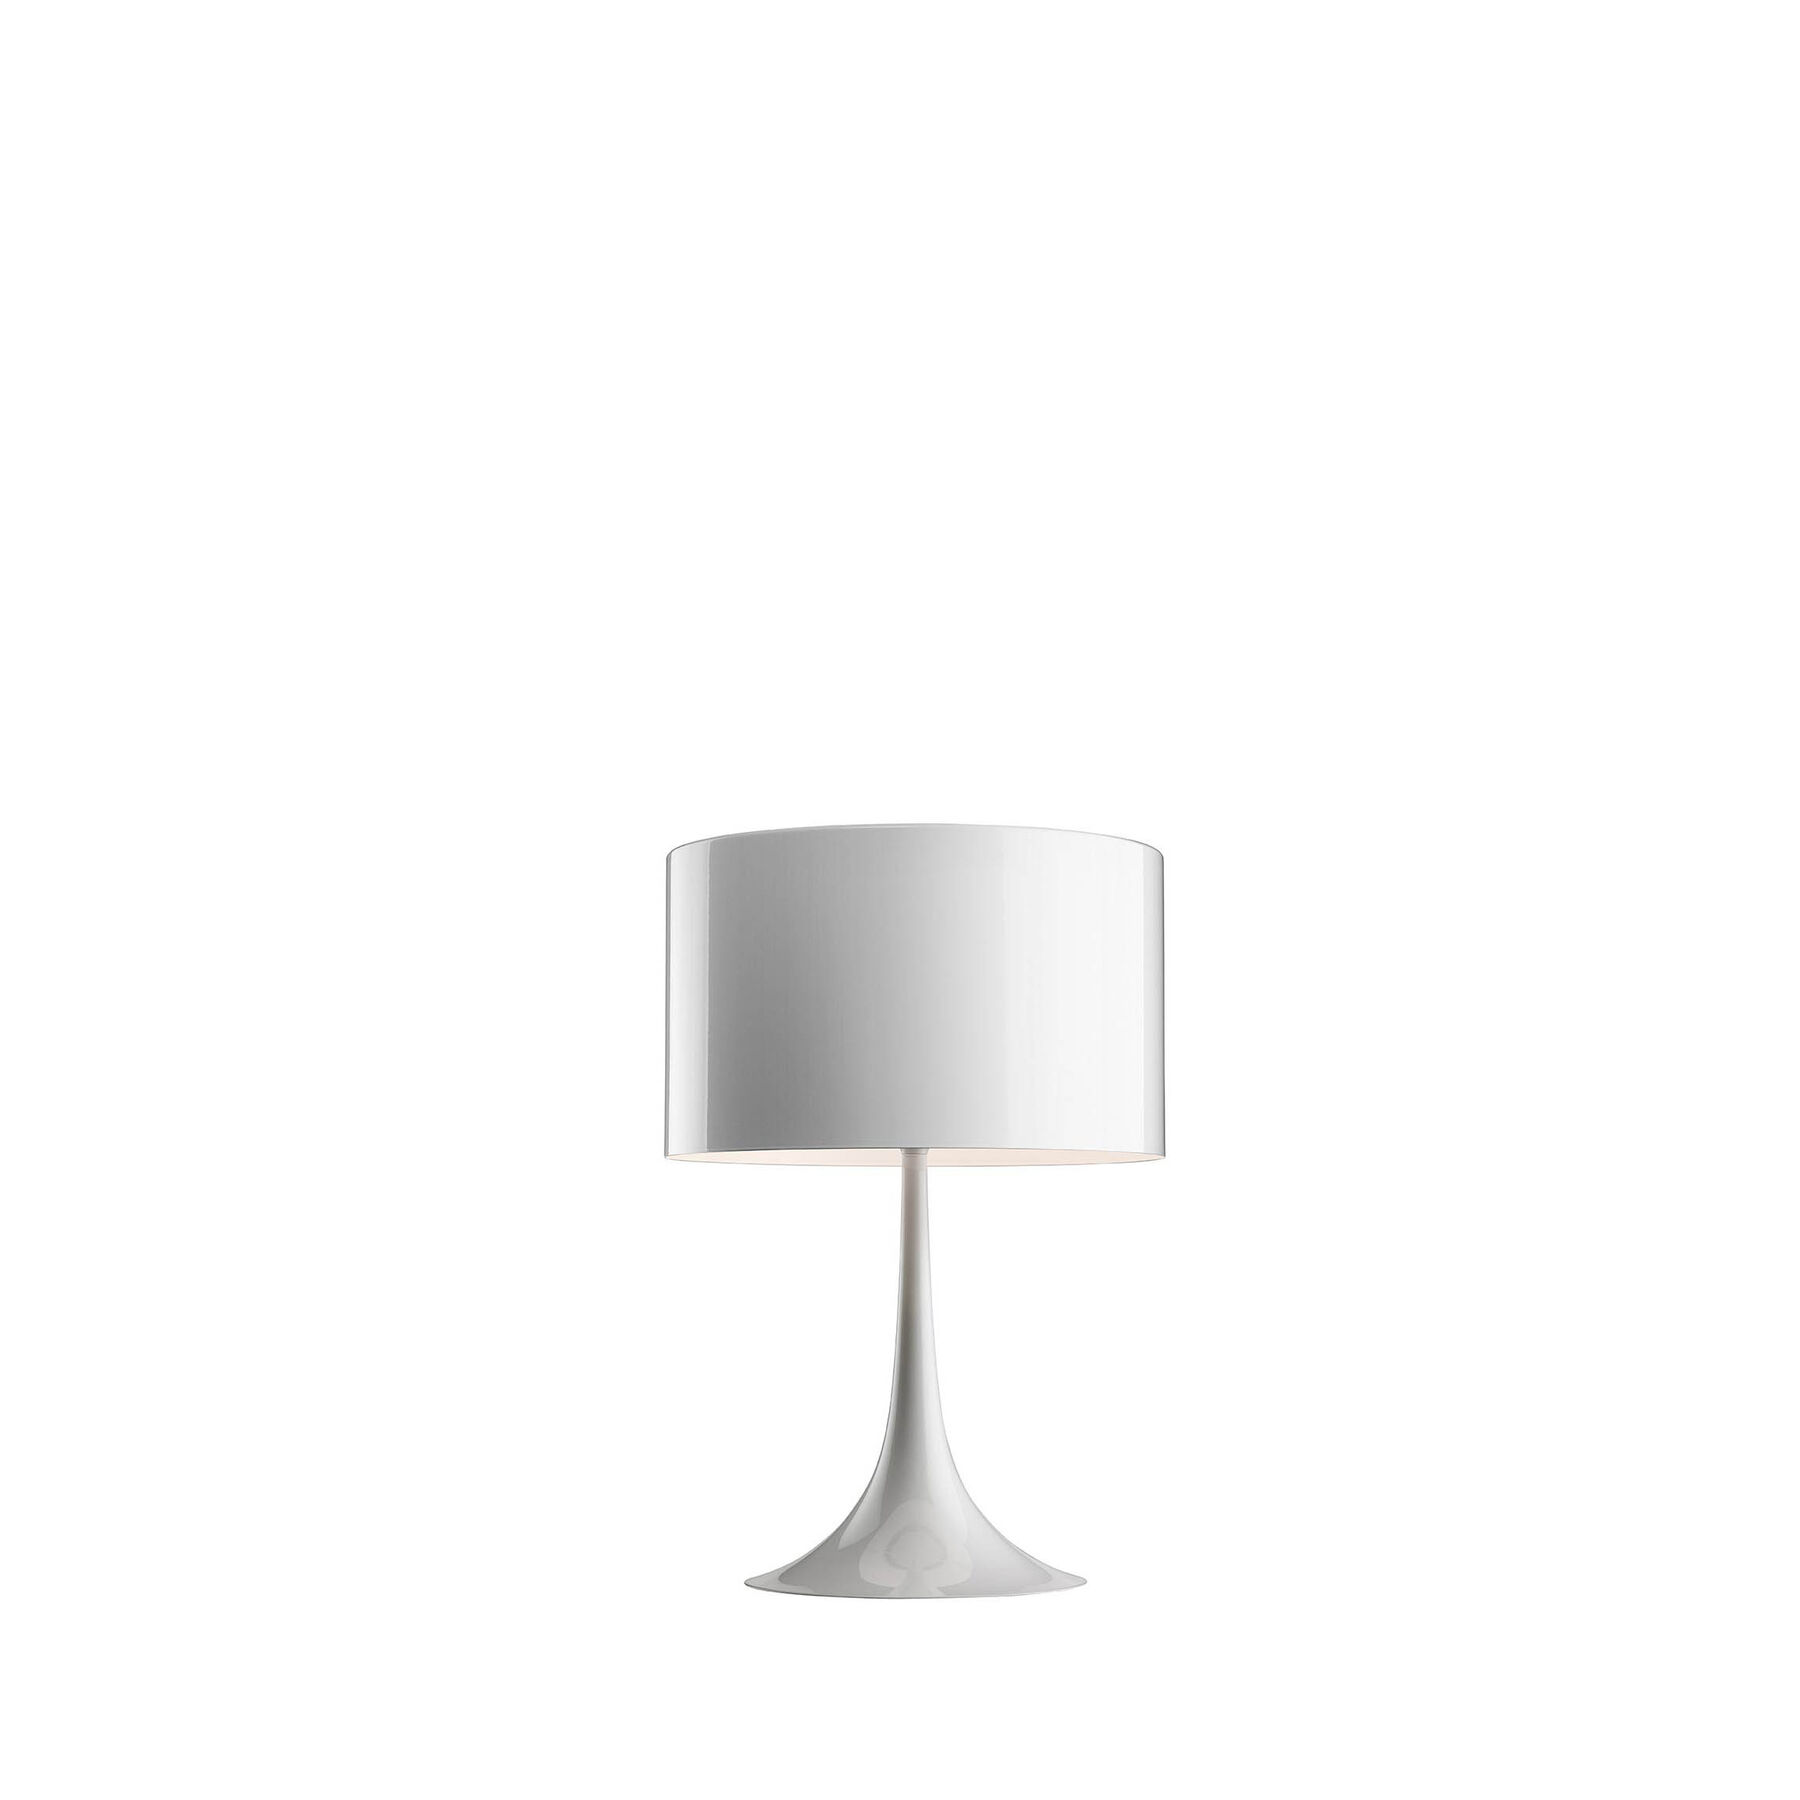 Купить Настольная лампа Spun Light Table 1 в интернет-магазине roooms.ru